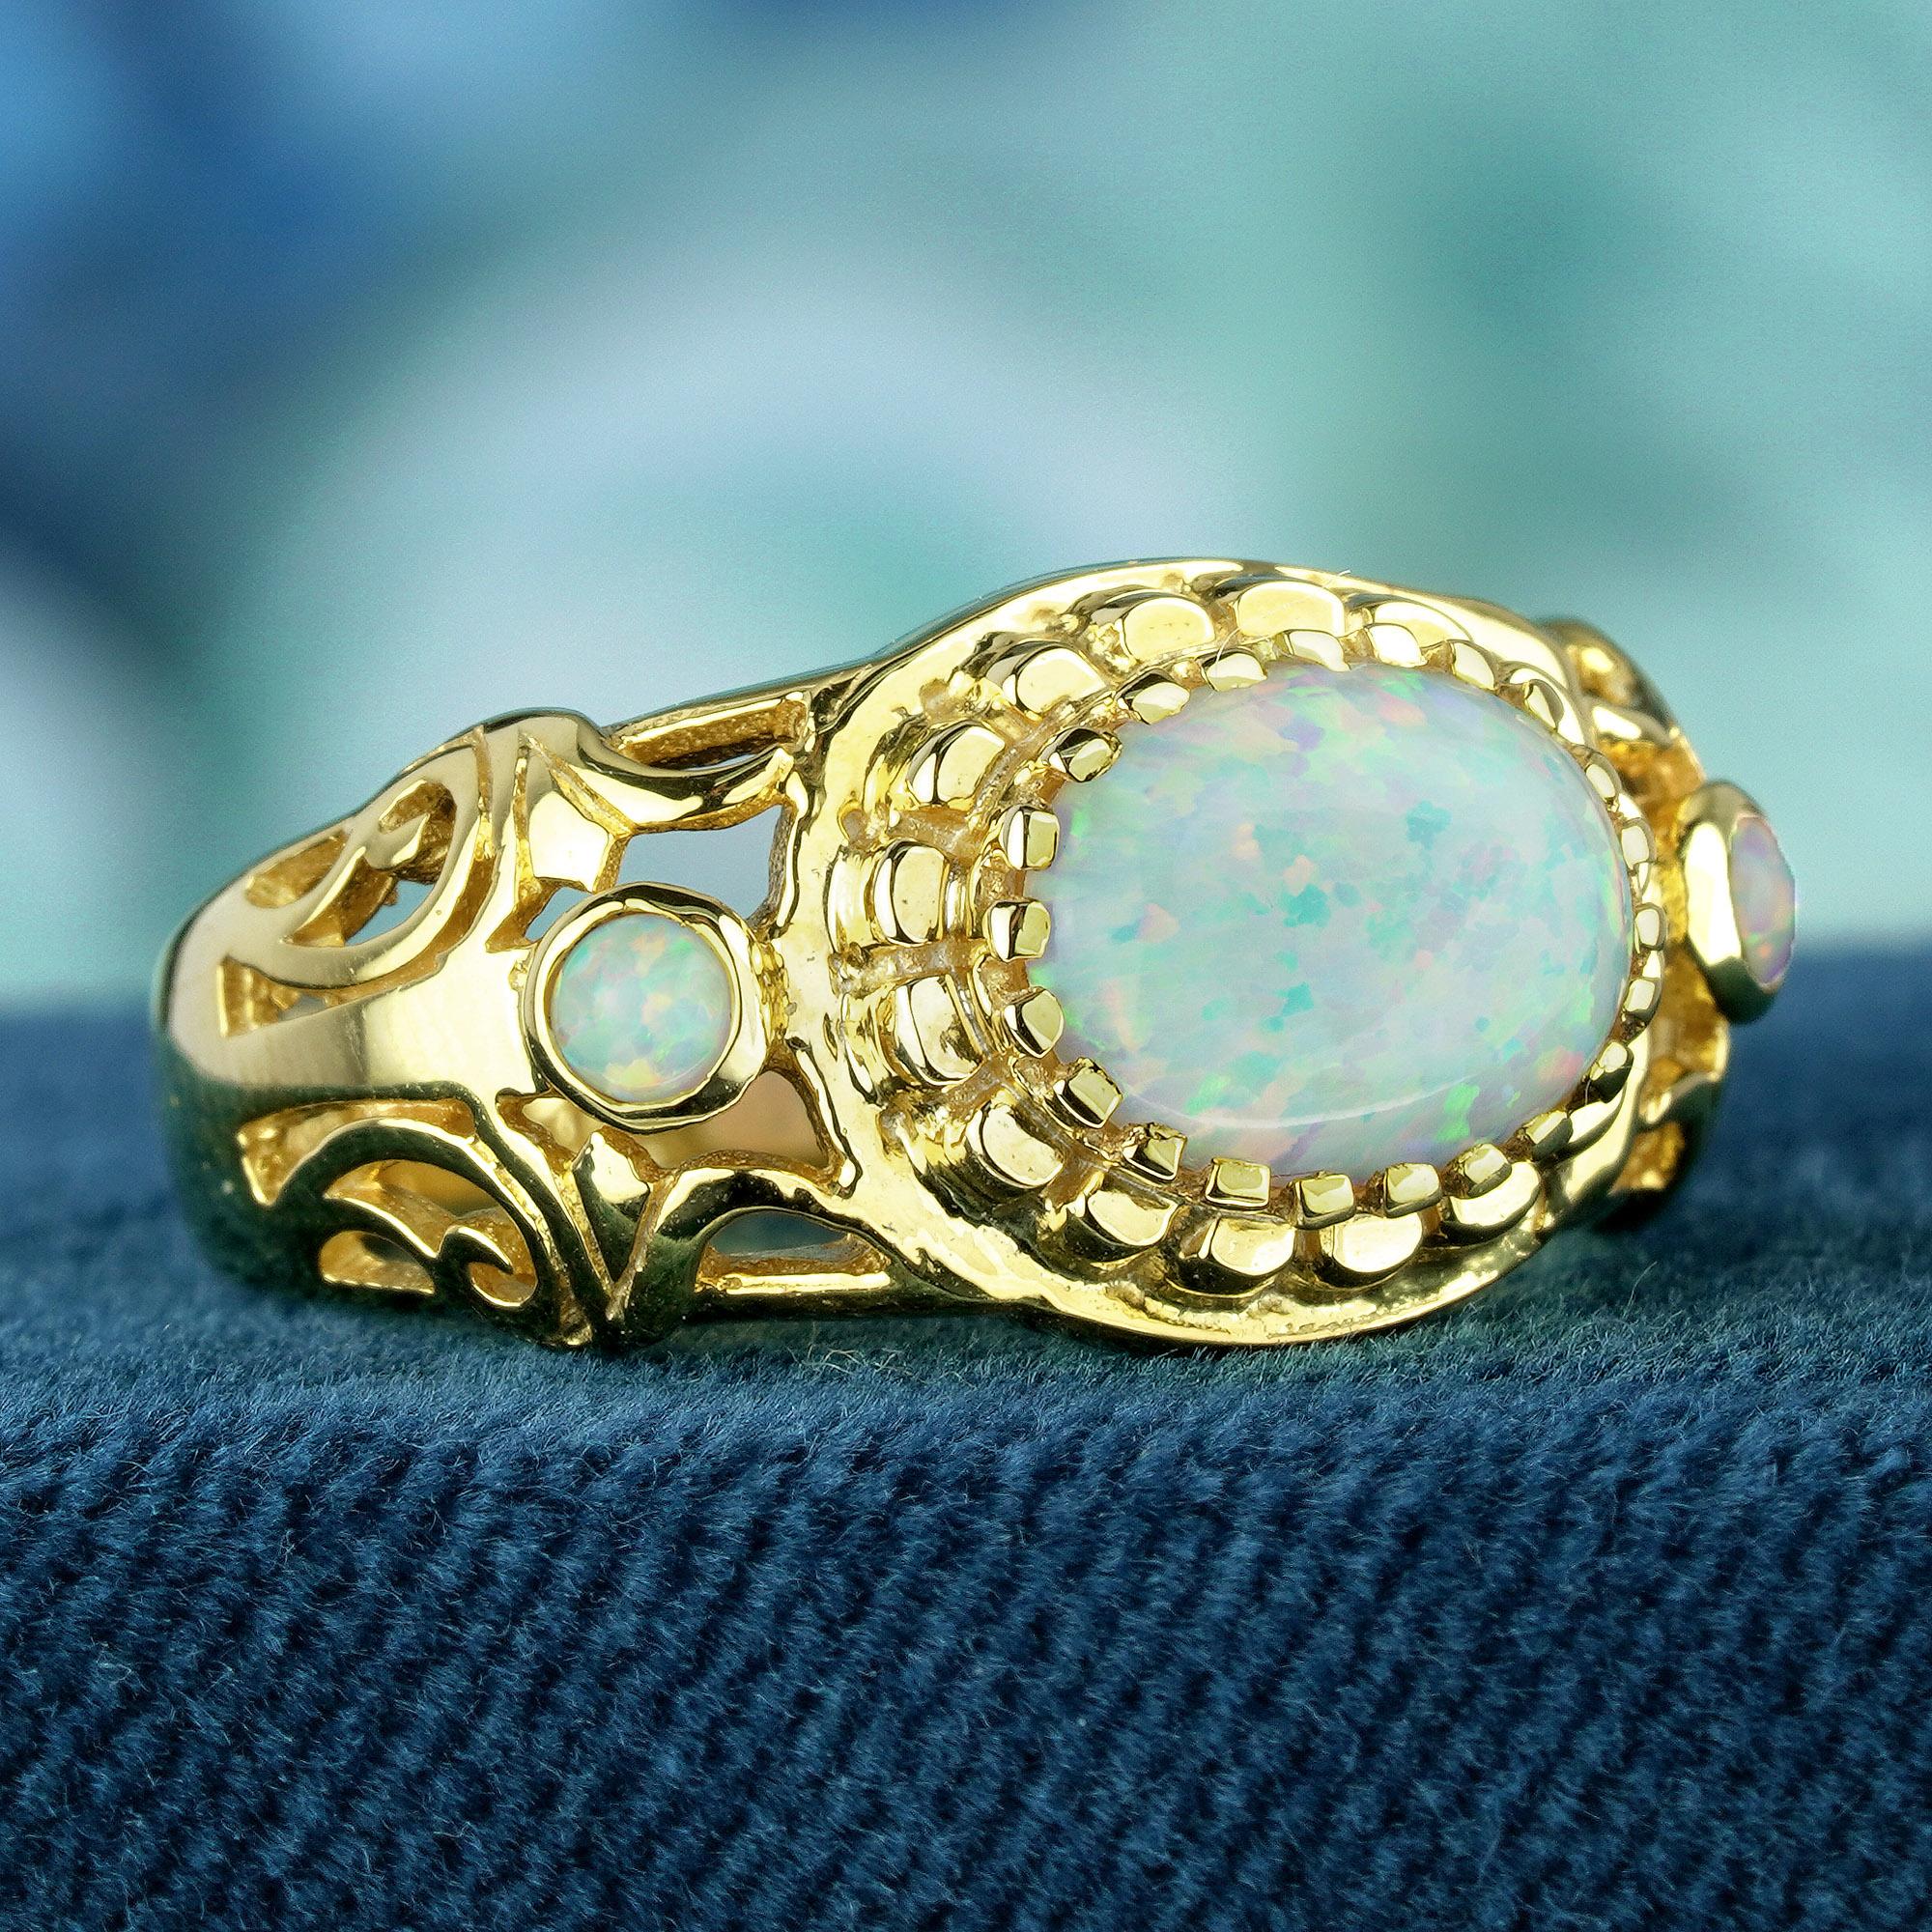 Erhöhen Sie Ihre Eleganz mit einem Hauch von Vintage-Charme. Erfreuen Sie sich an der ätherischen Schönheit unseres Rings im Vintage-Stil, der in Gelbgold gefertigt ist. Im Mittelpunkt steht ein wunderschöner ovaler weißer Opal als Cabochon, der